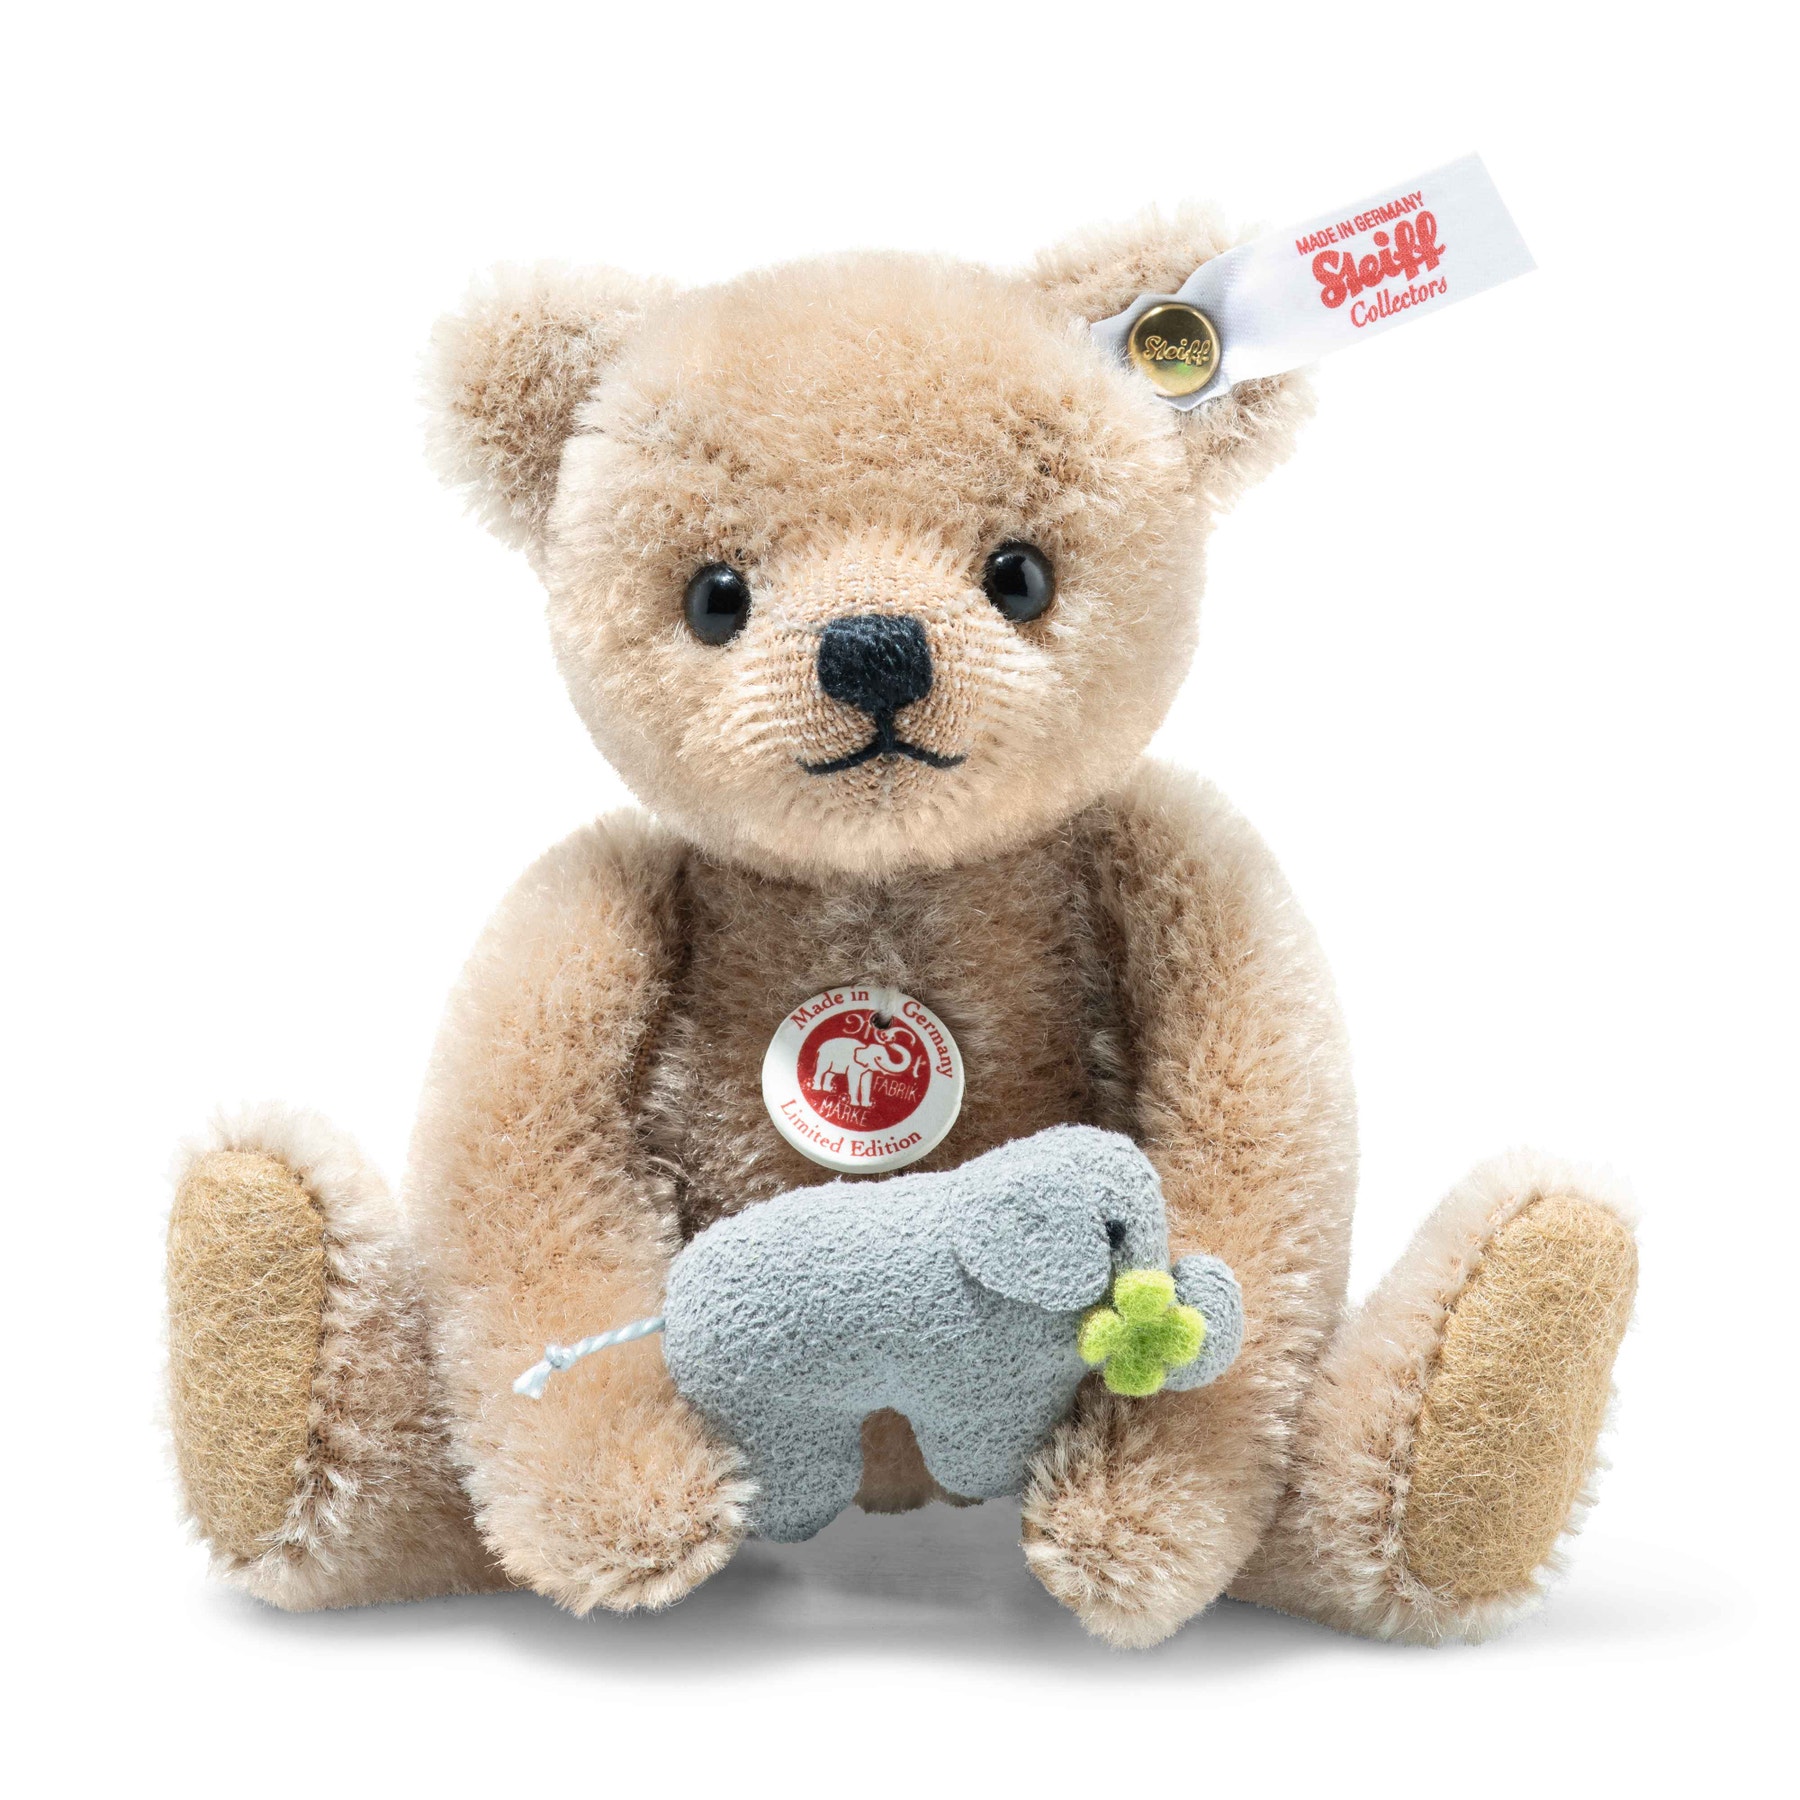 Online Exclusive Savannah Teddy Bear with Elephant “Good Luck” Charm